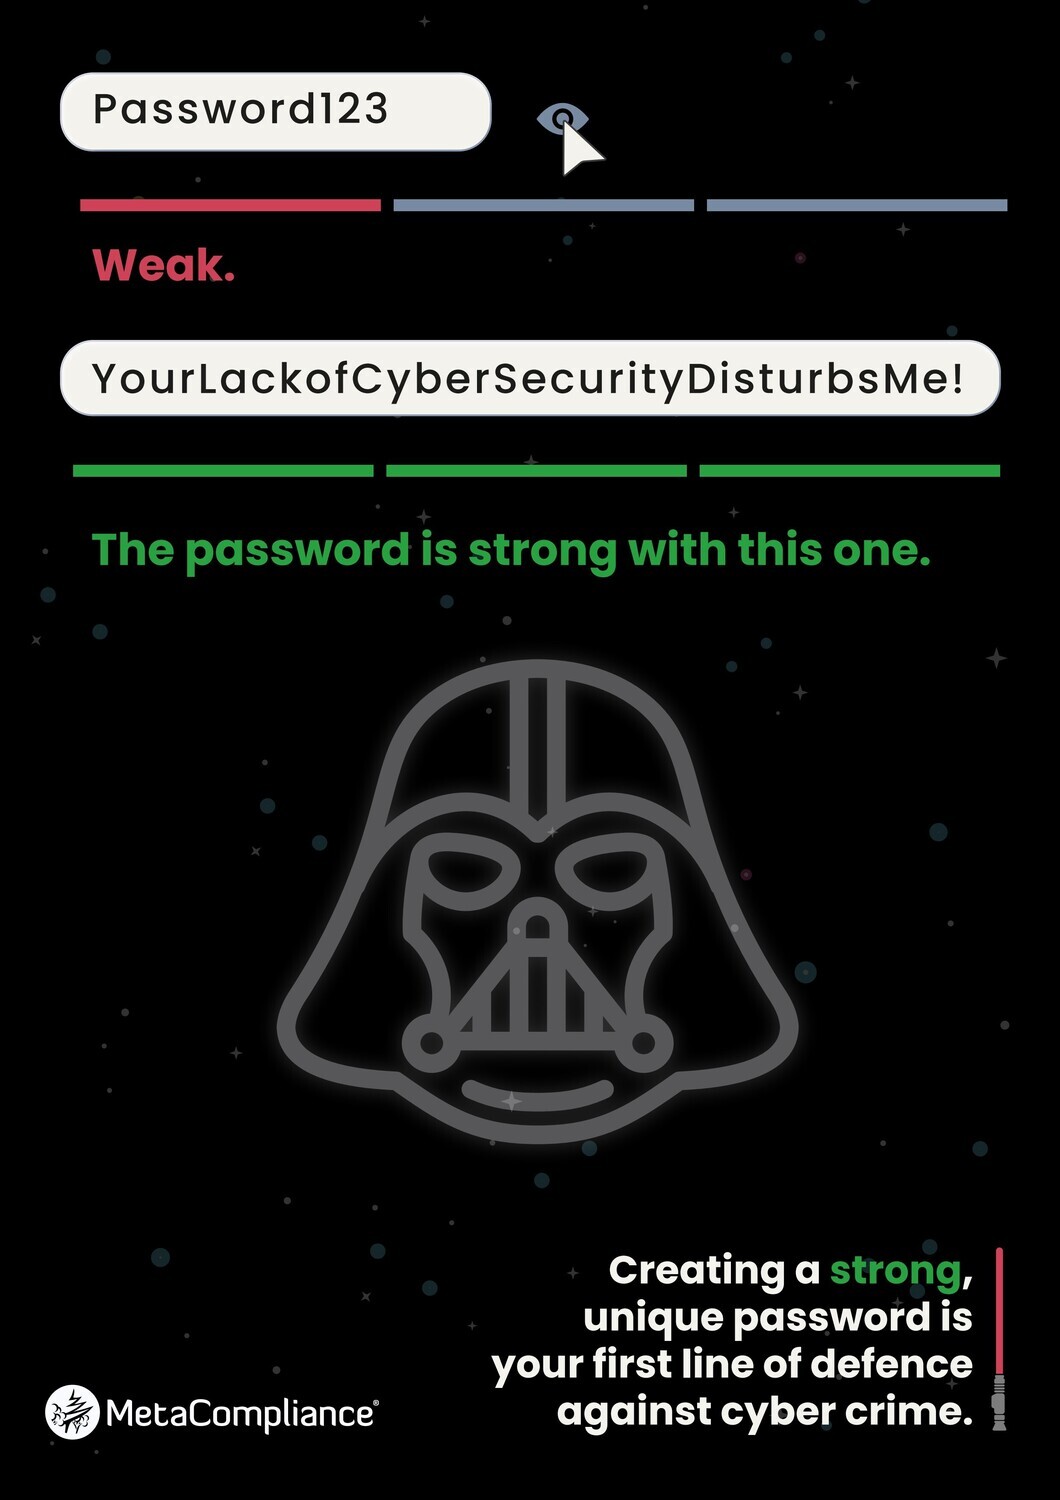 CyberSecurity - MetaCompliance-1